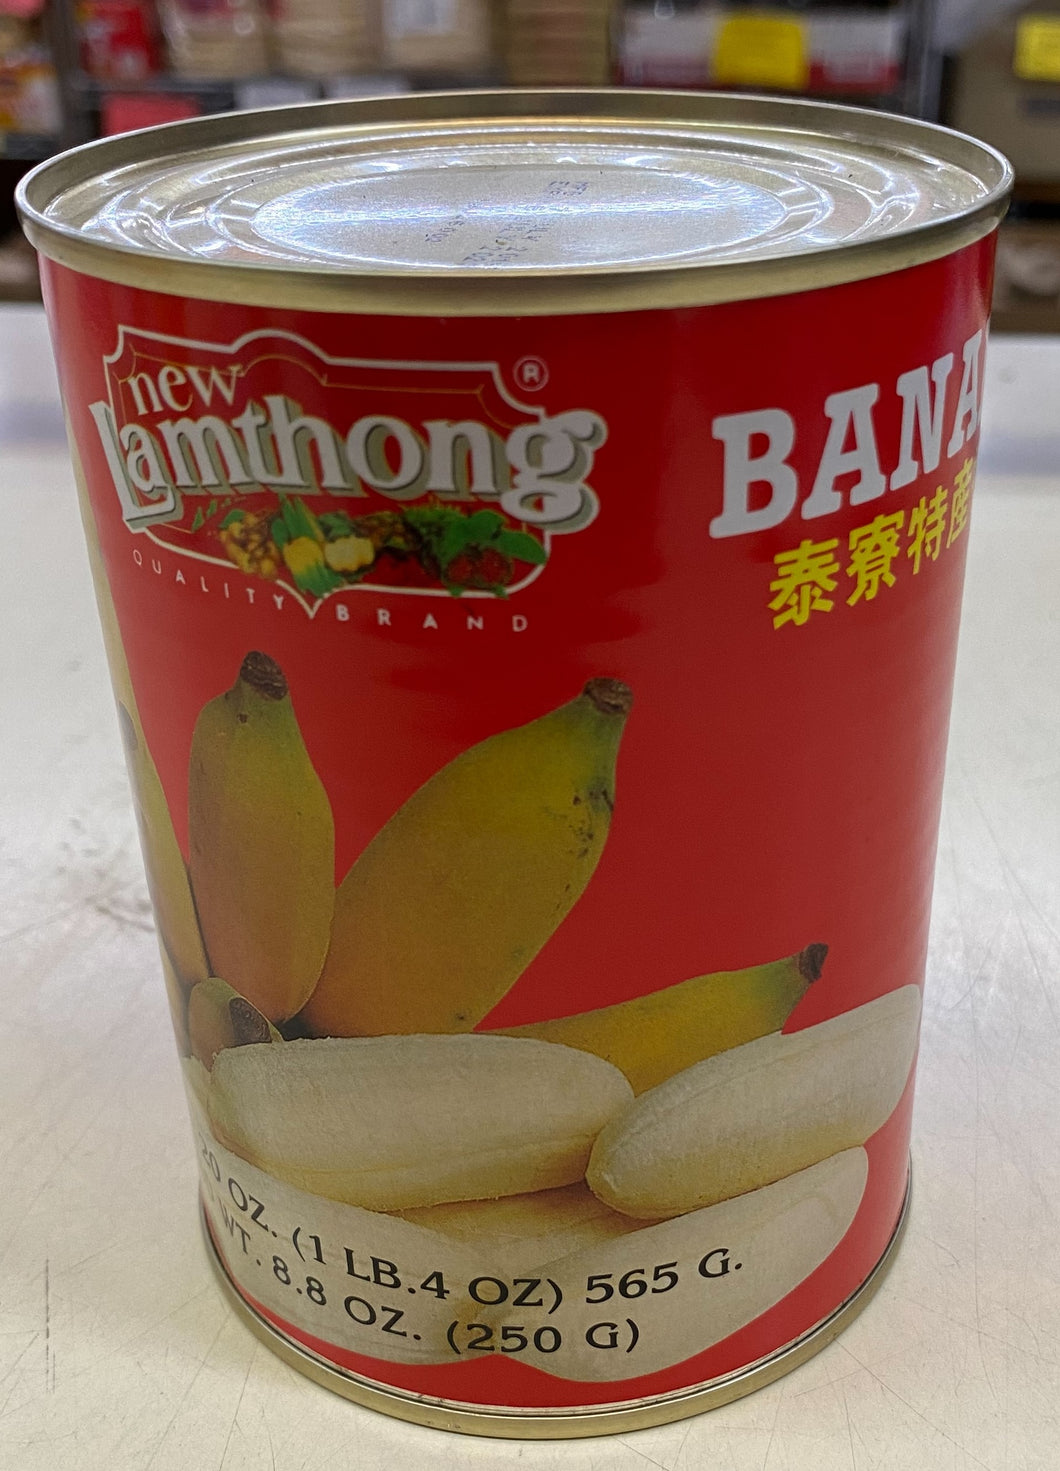 New Lamthong Banana in Syrup